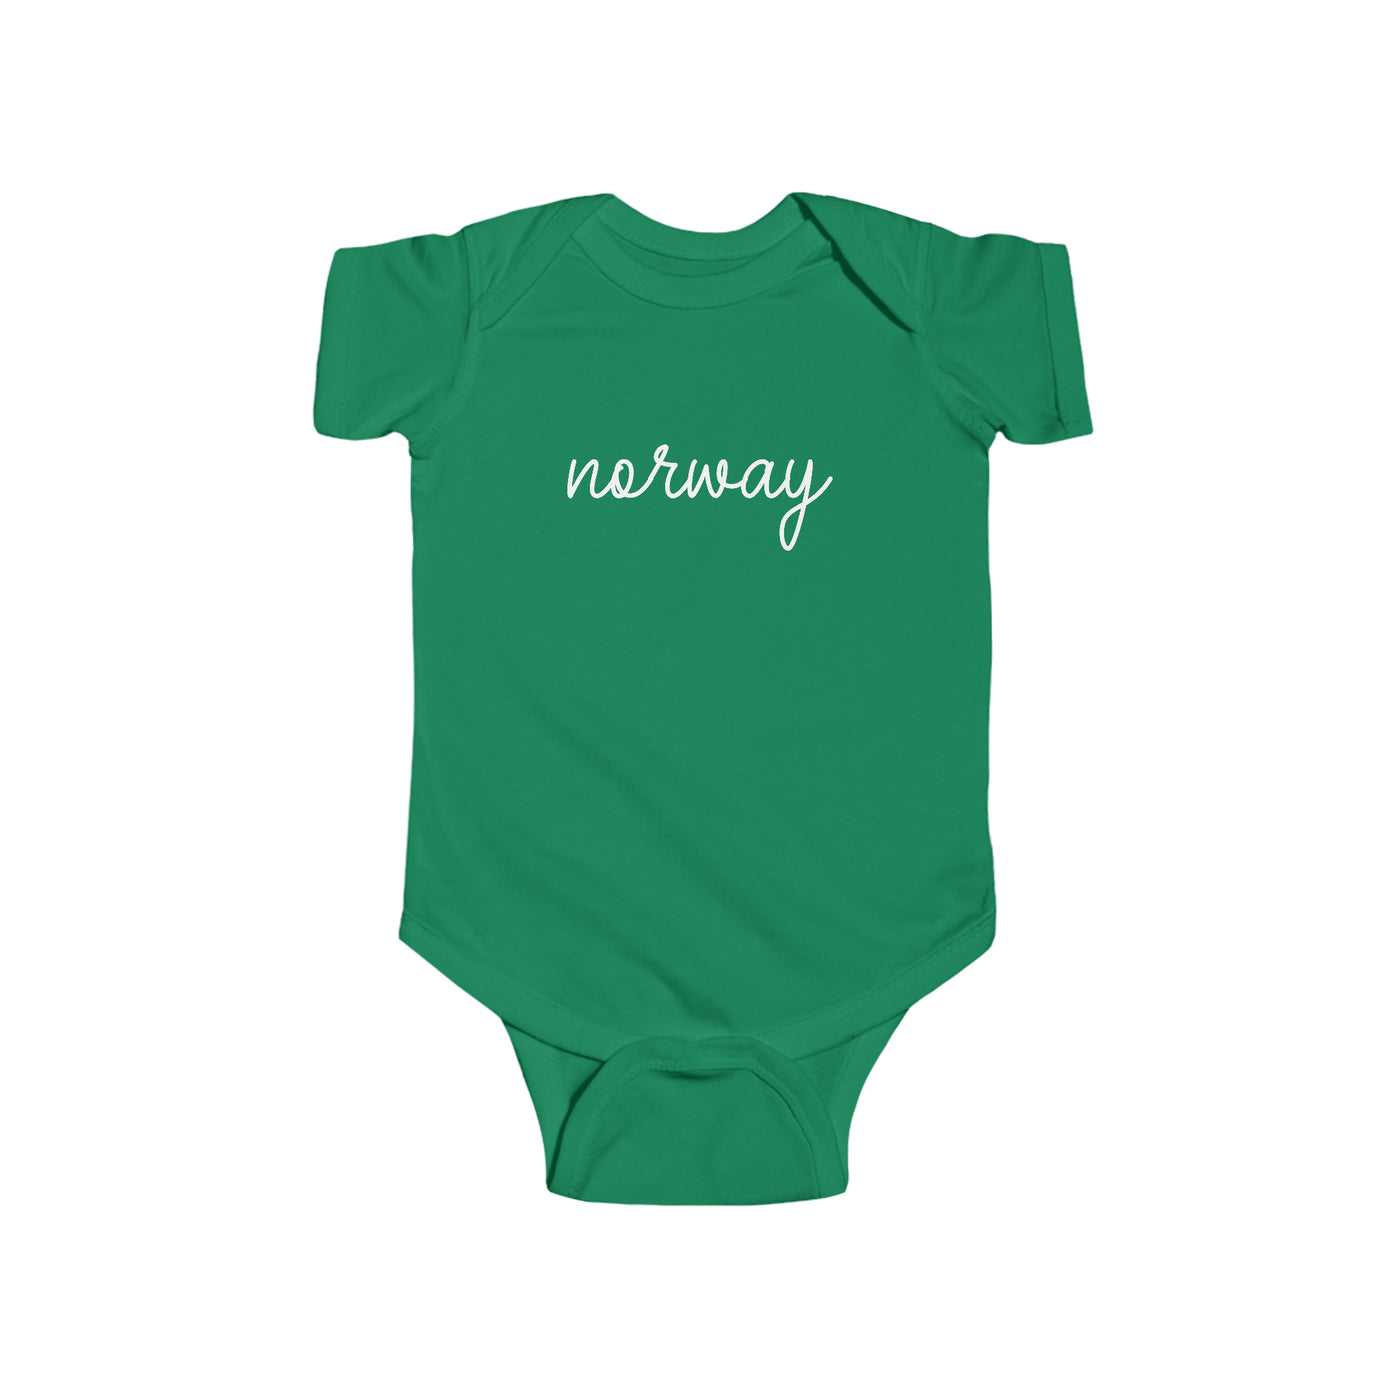 Norway Baby Bodysuit